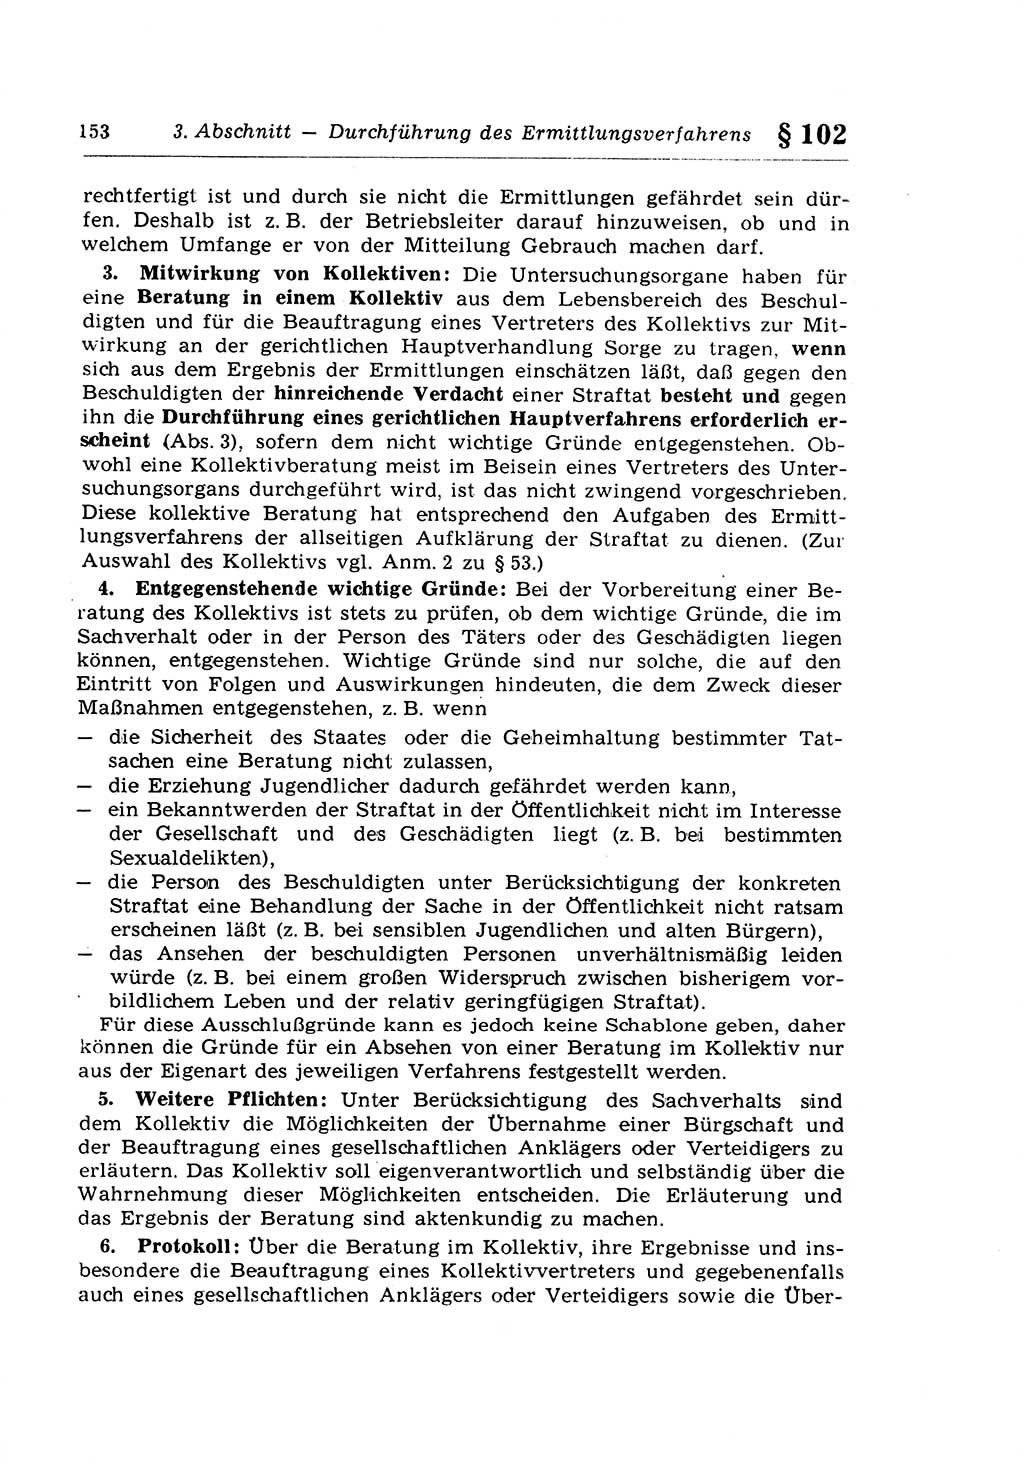 Strafprozeßrecht der DDR (Deutsche Demokratische Republik), Lehrkommentar zur Strafprozeßordnung (StPO) 1968, Seite 153 (Strafprozeßr. DDR Lehrkomm. StPO 19688, S. 153)